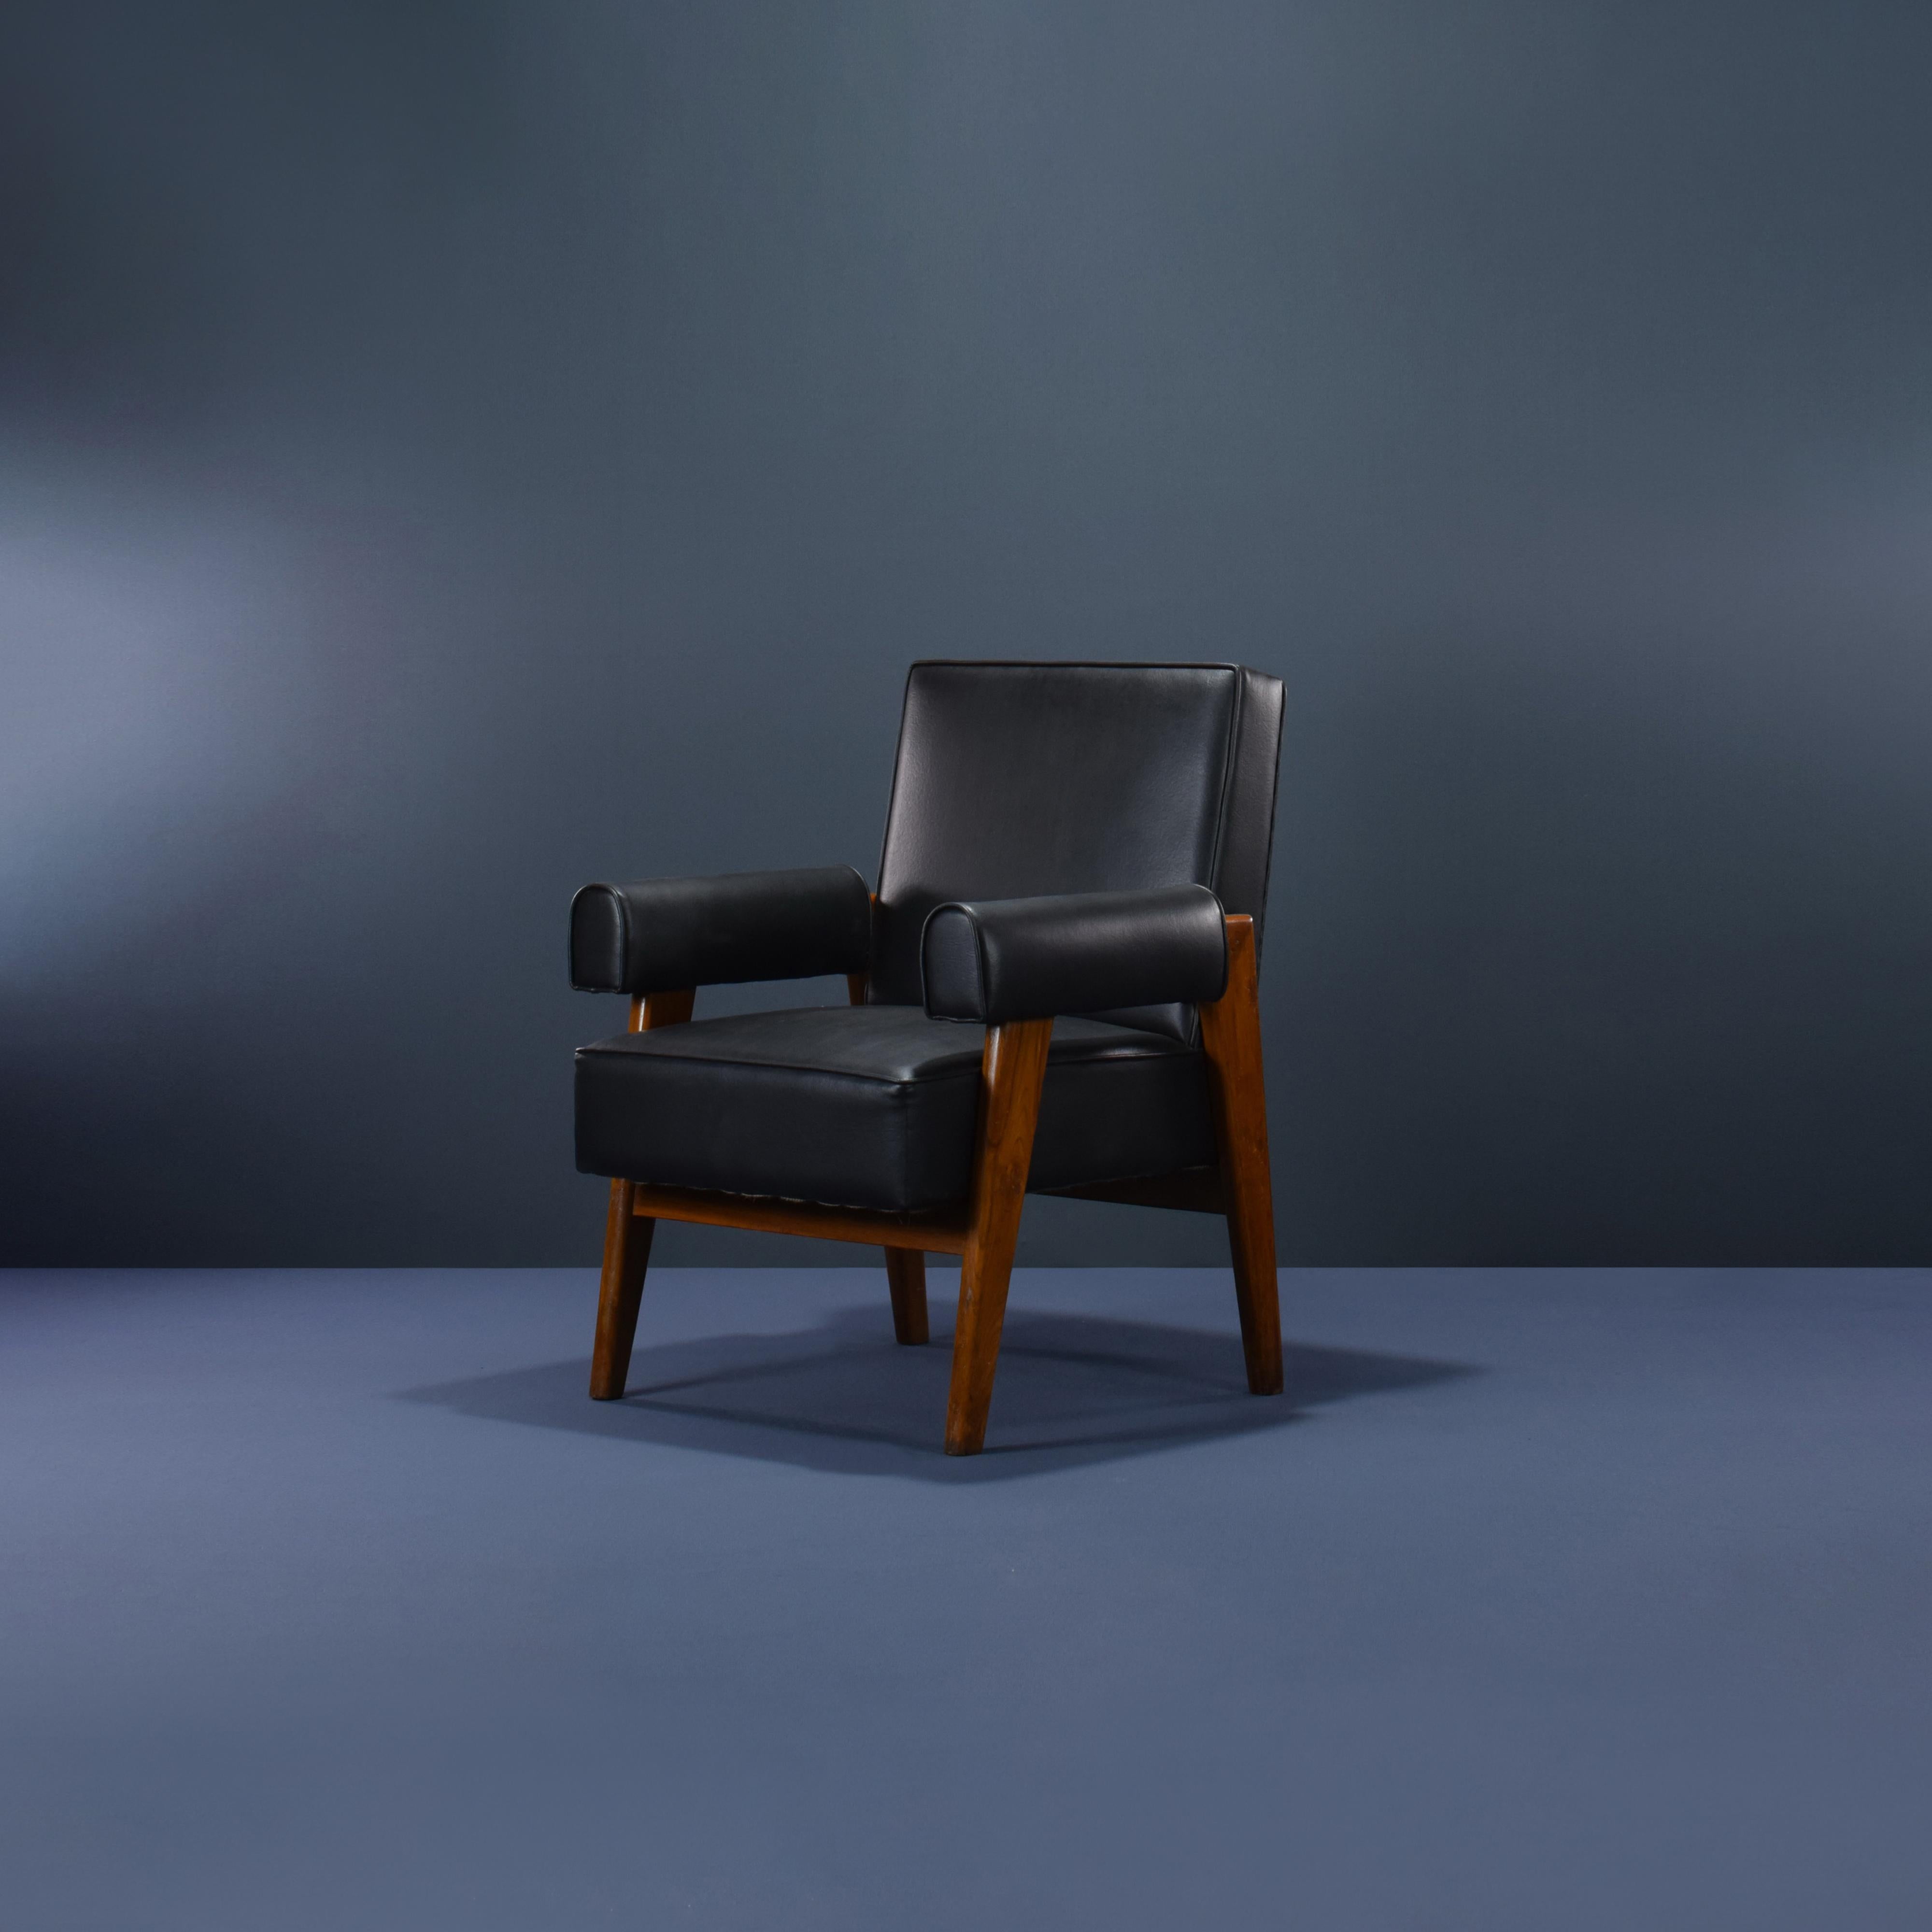 Cette chaise est une pièce fantastique, enfin elle est iconique. Il est brut dans sa simplicité, rien de trop mais pourtant rien ne manque. Nous pouvons réaliser n'importe quelle tapisserie d'ameublement, dans n'importe quelle couleur et n'importe